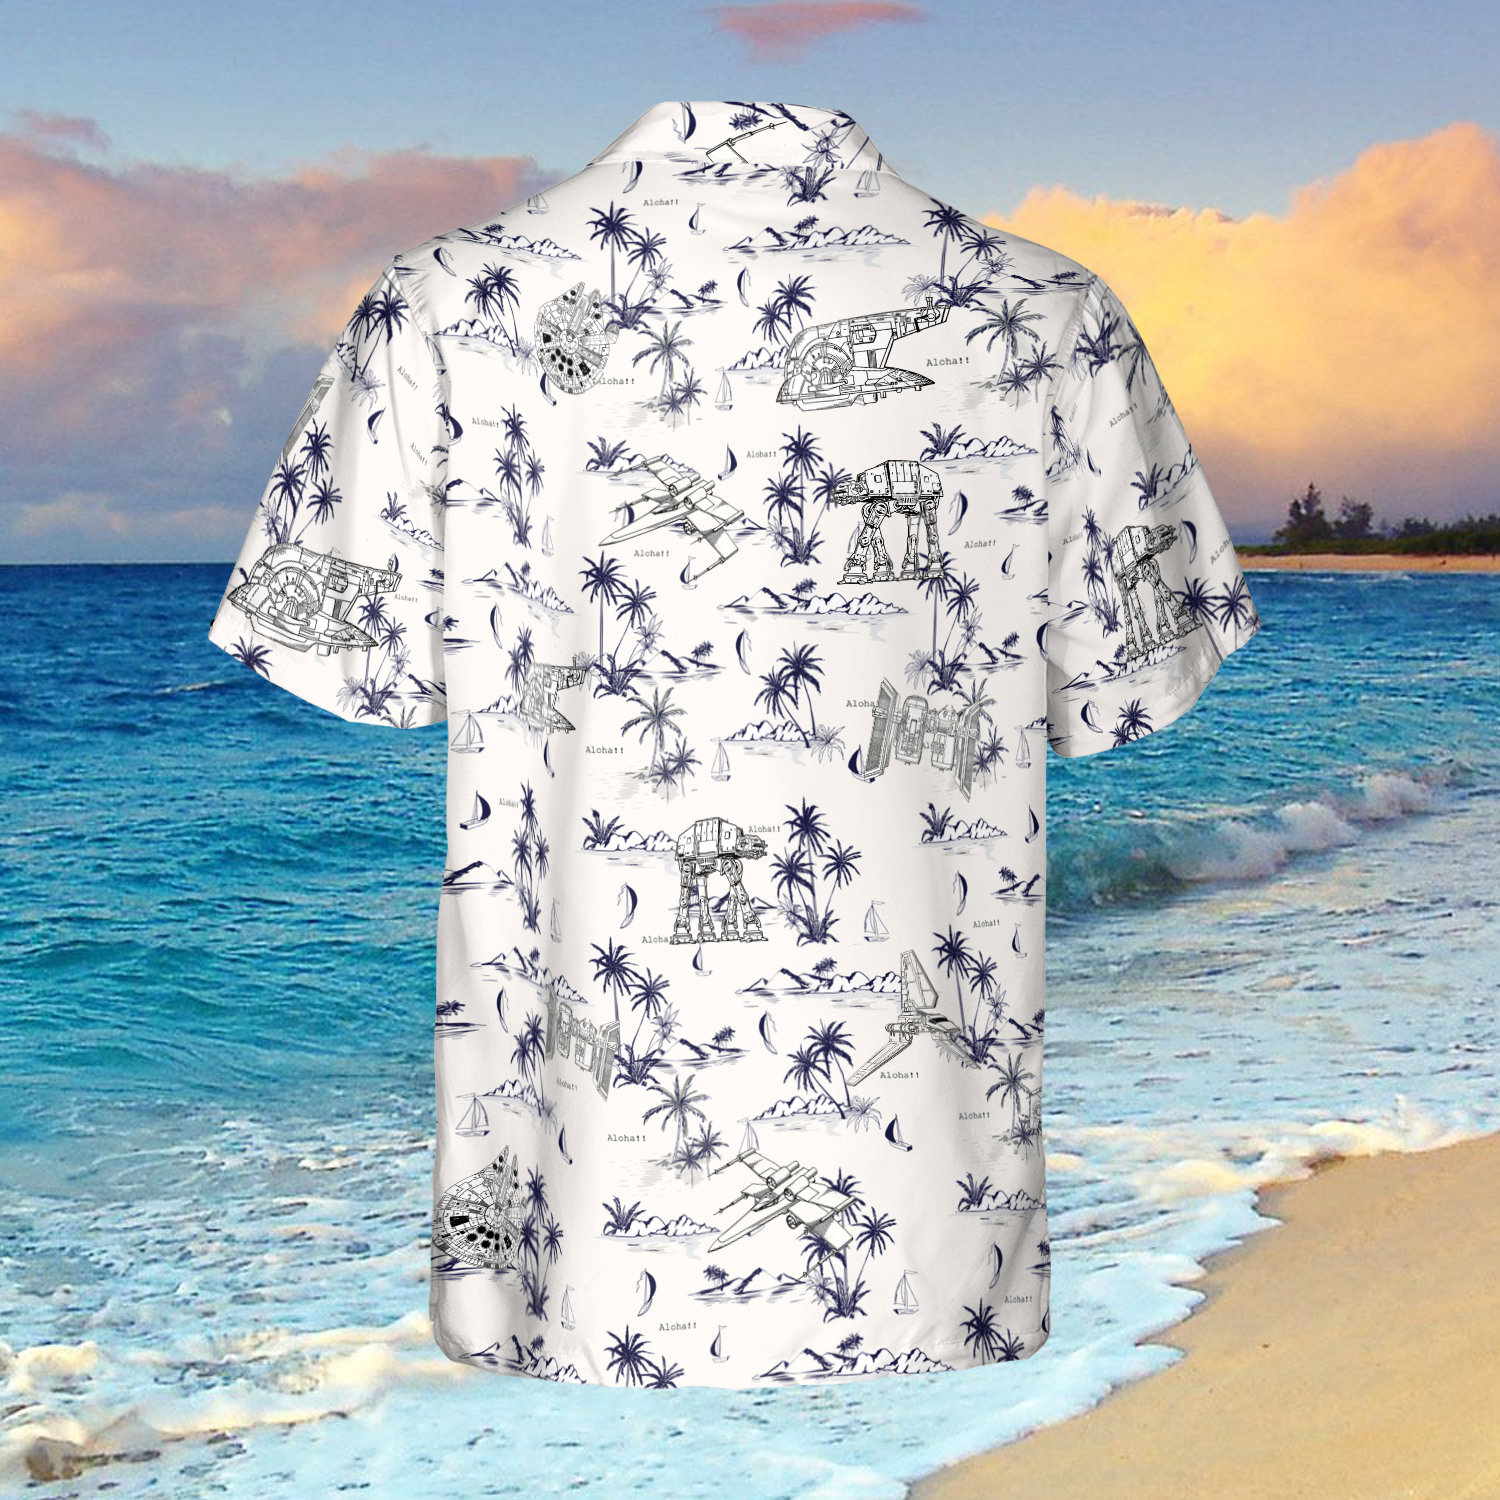 Star Wars Hawaiian Shirt, Star Wars Shirt